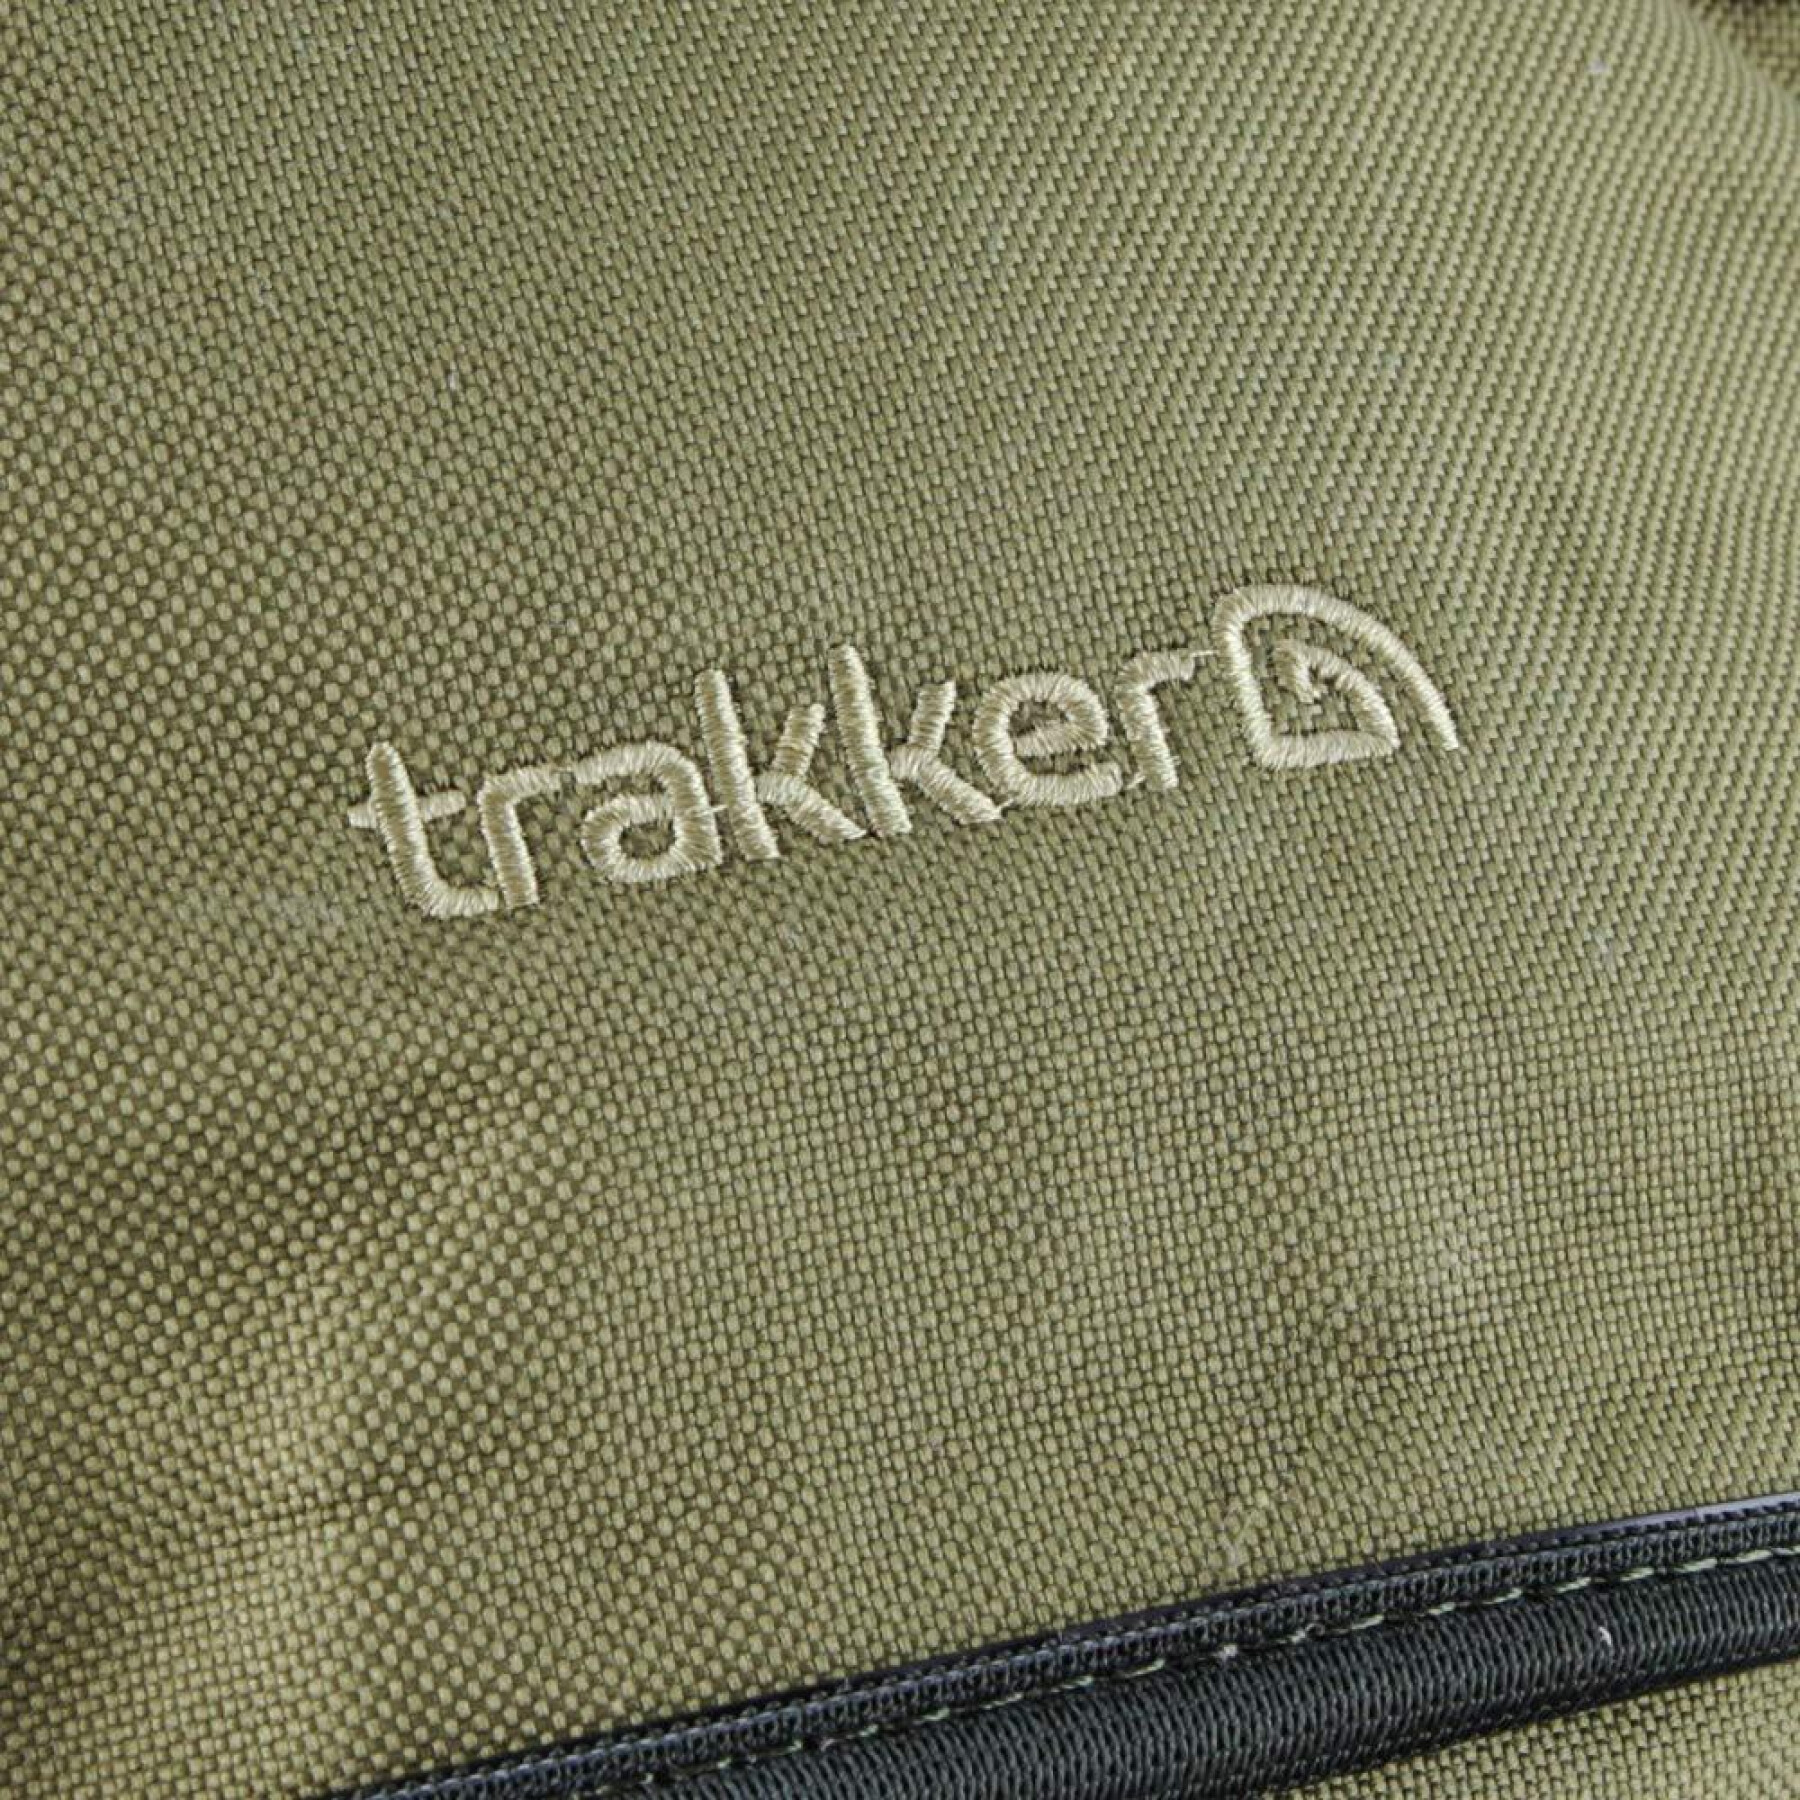 Backpack Trakker NXG 45 Ltr Rucksack